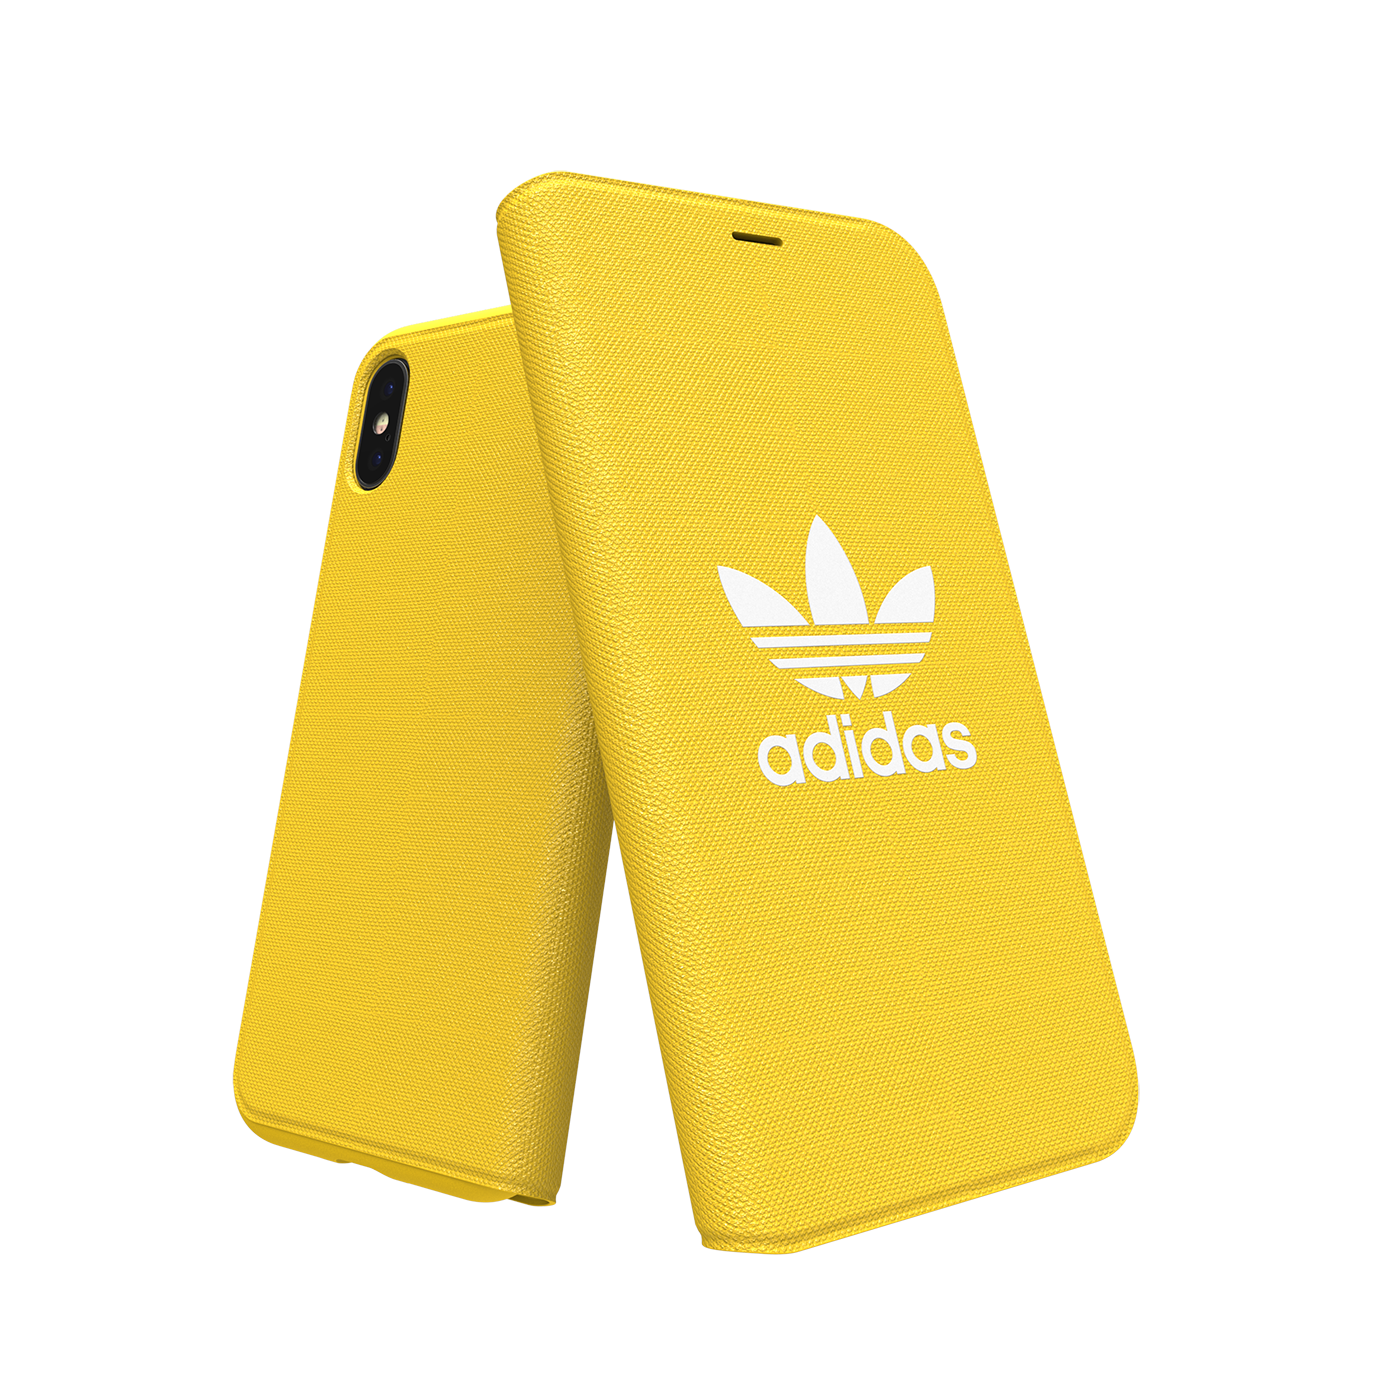 adidas Originals Trefoil Booklet Case Yellow iPhone 3 